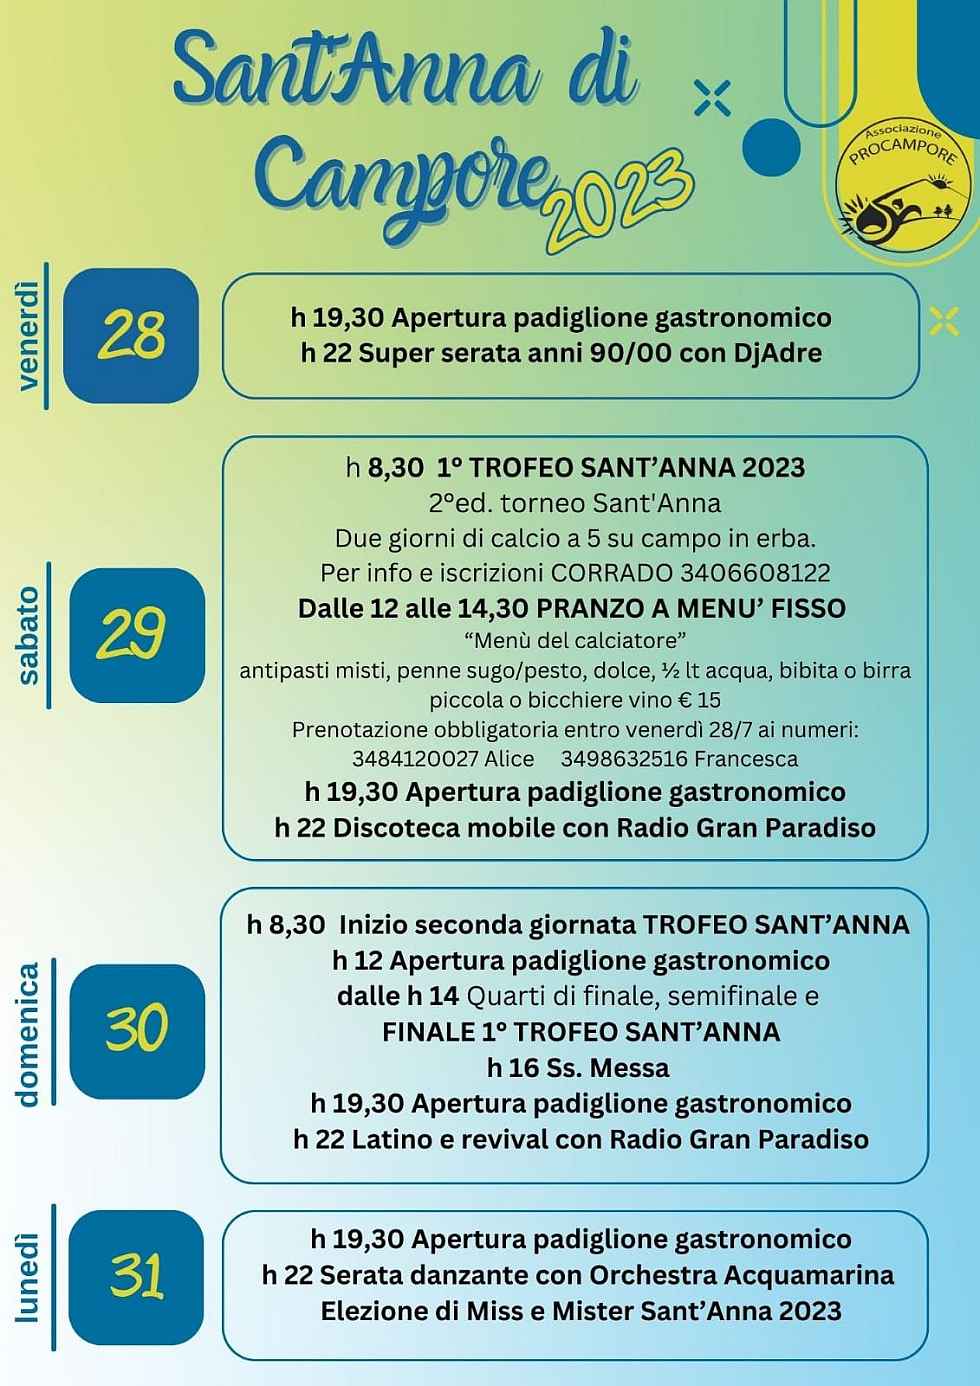 Sant'Anna di Campore (TO)
"Festa di Sant'Anna"
dal 29 Luglio al 1° Agosto 2022
